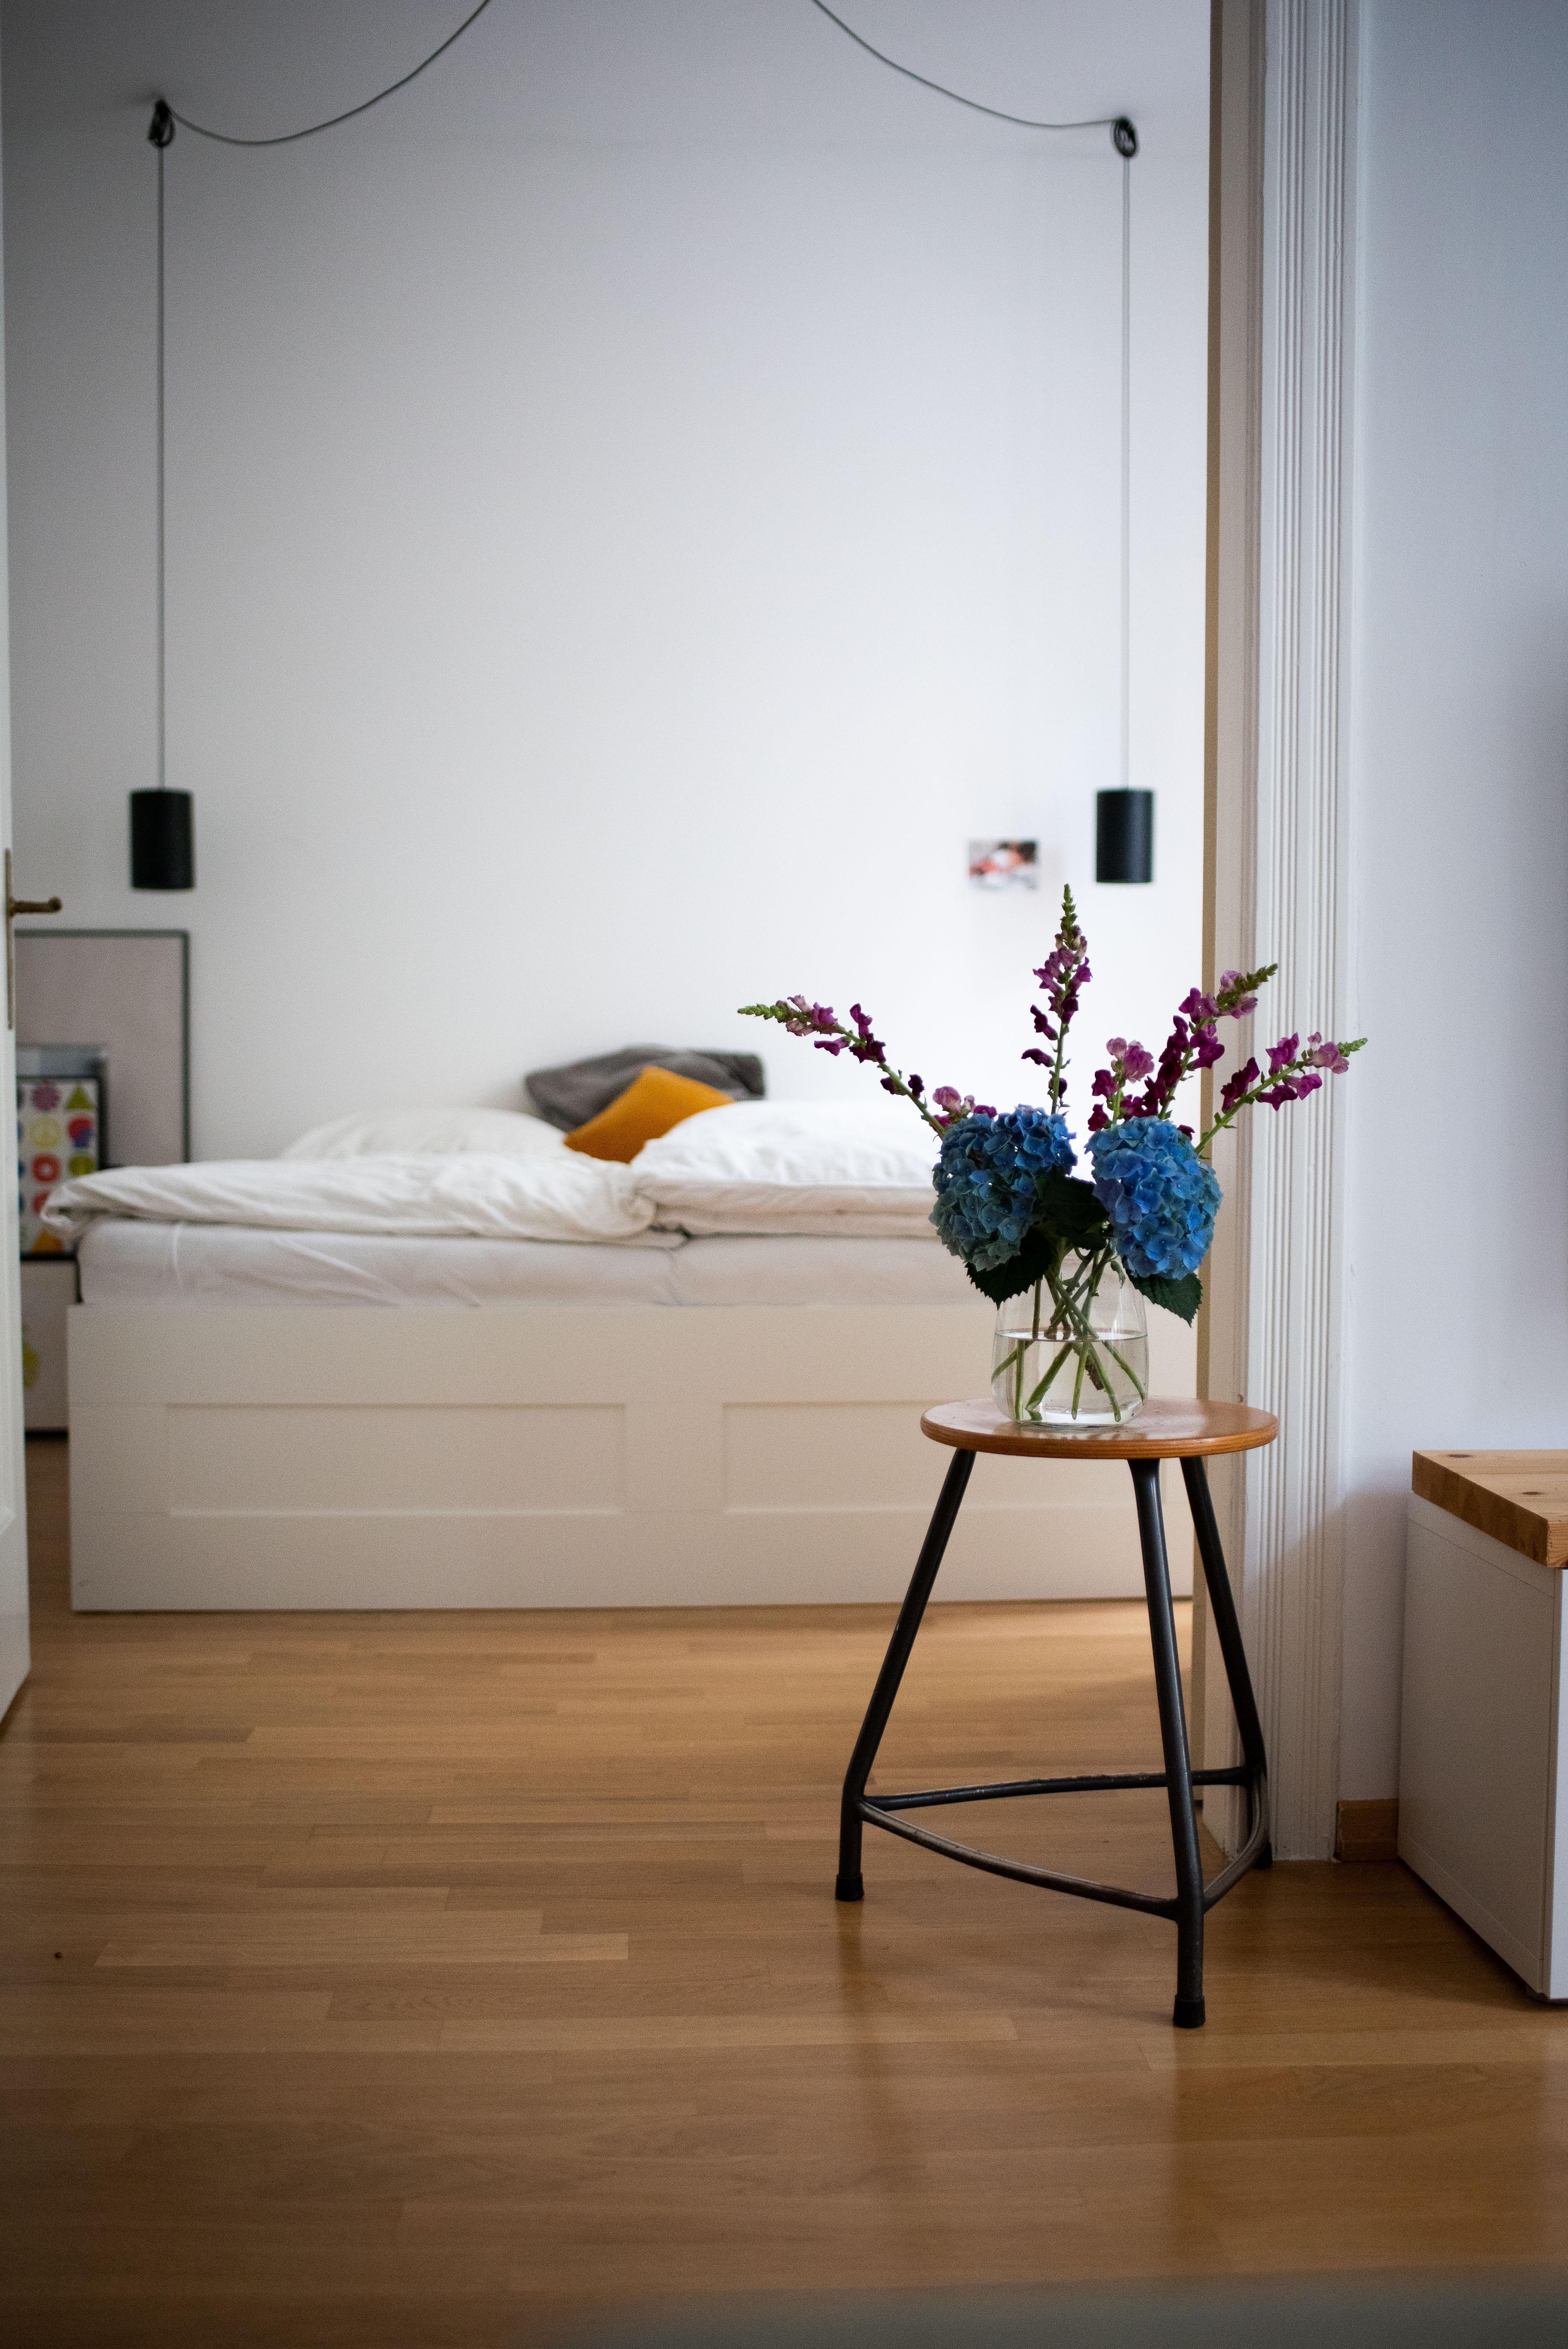 Guten Montagmorgen!!! #schlafzimmer #altbau #vintage #whiteliving #minimalism #interiordesign #interiorinspo #flowers